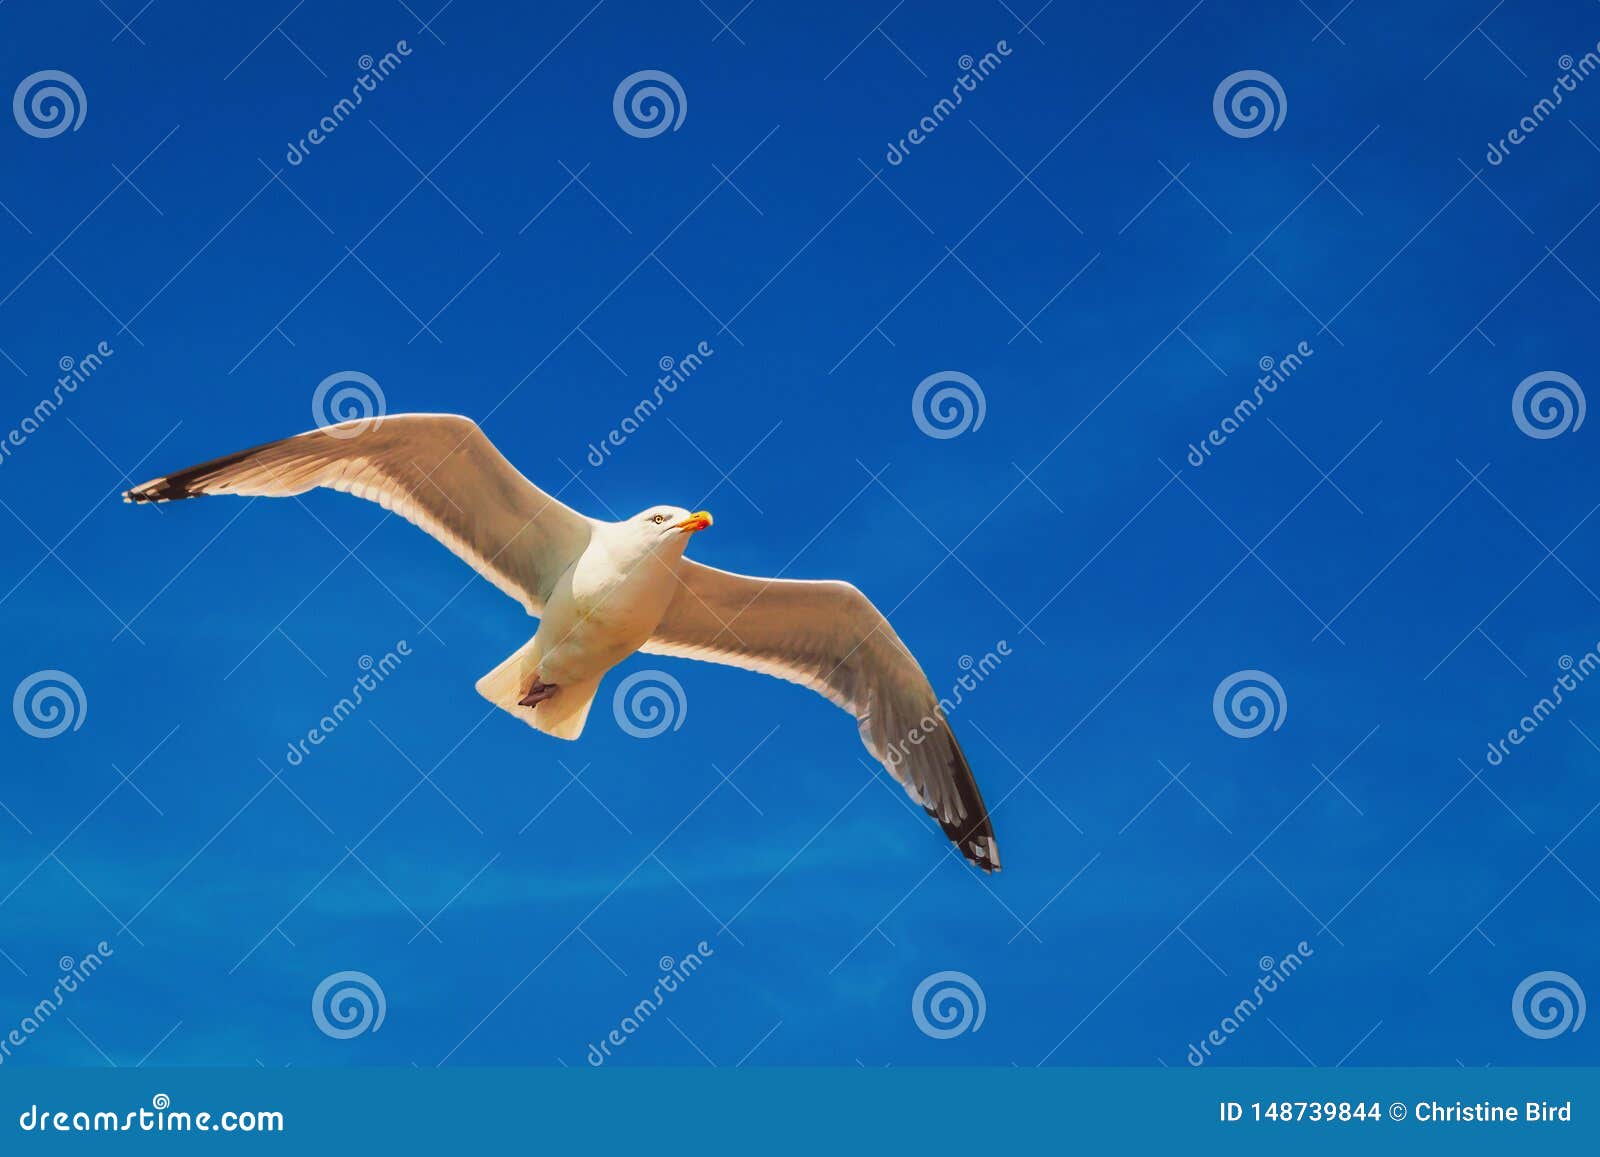 seagull flying overhead against a blue sky